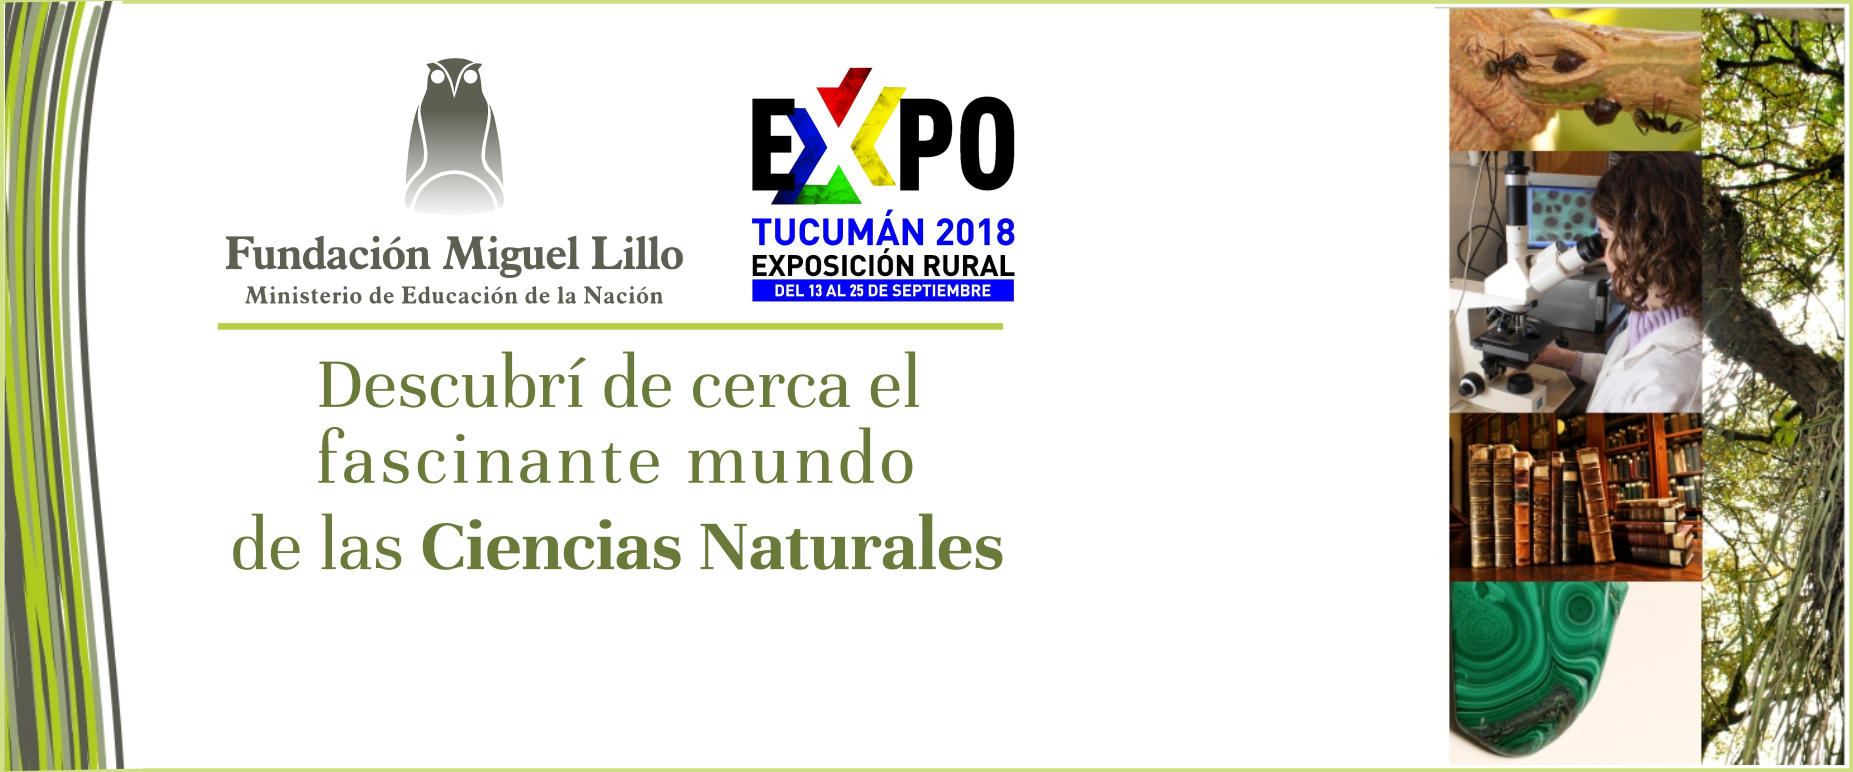 Fundación Miguel Lillo en la EXPO 2018